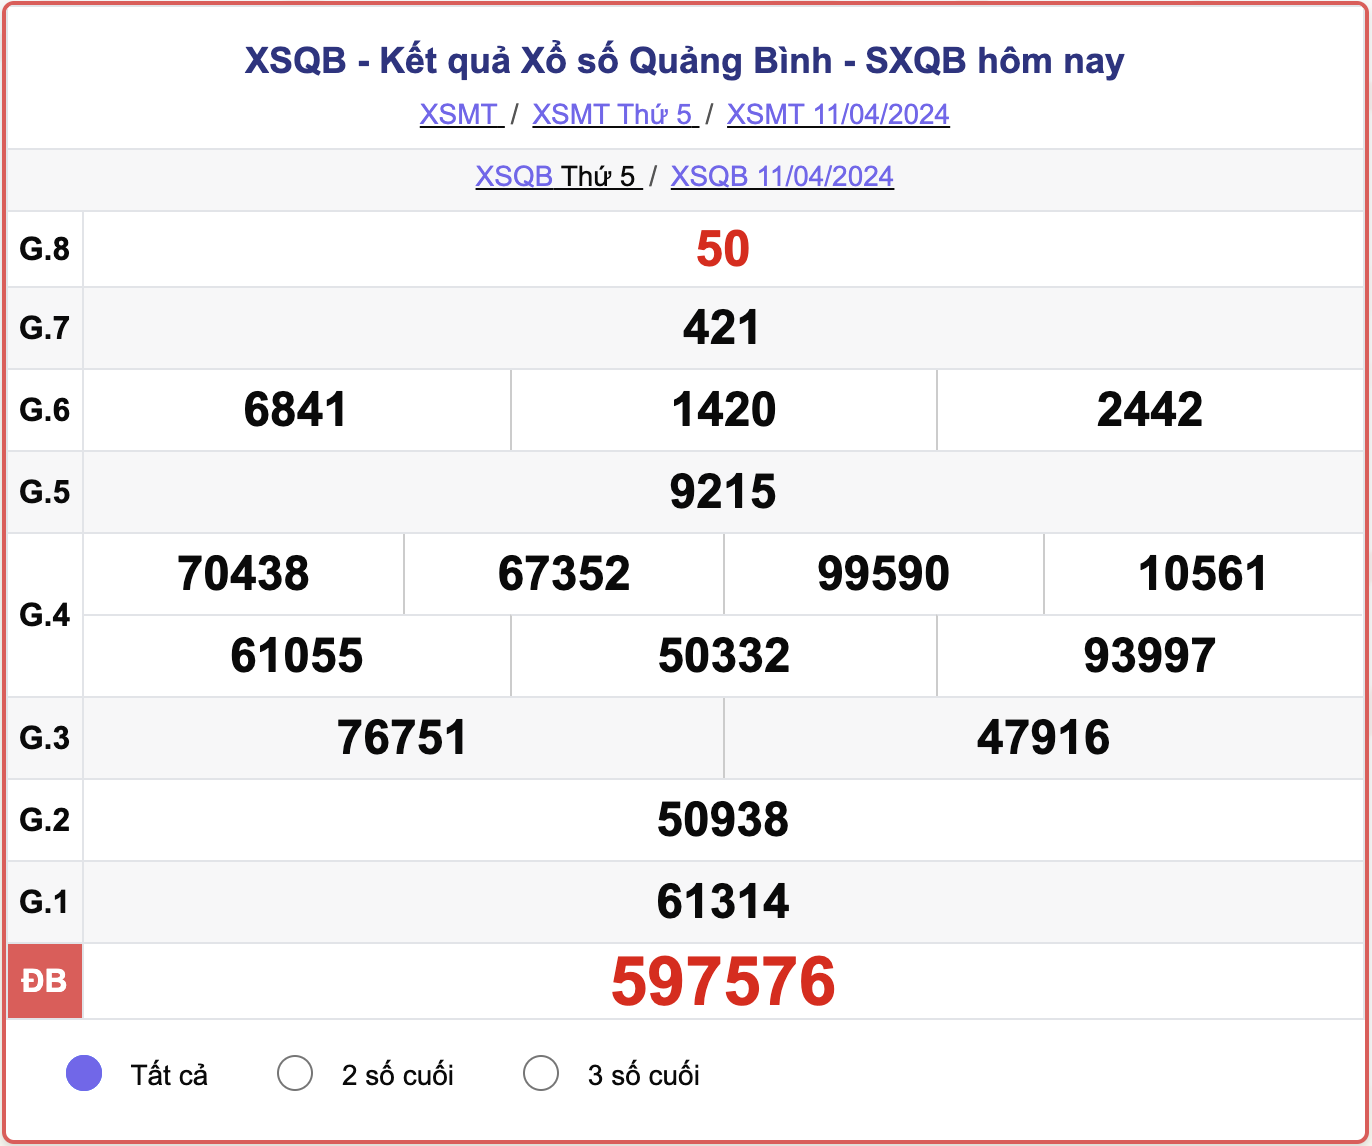 XSQB thứ 5, kết quả xổ số Quảng Bình ngày 11/4/2024